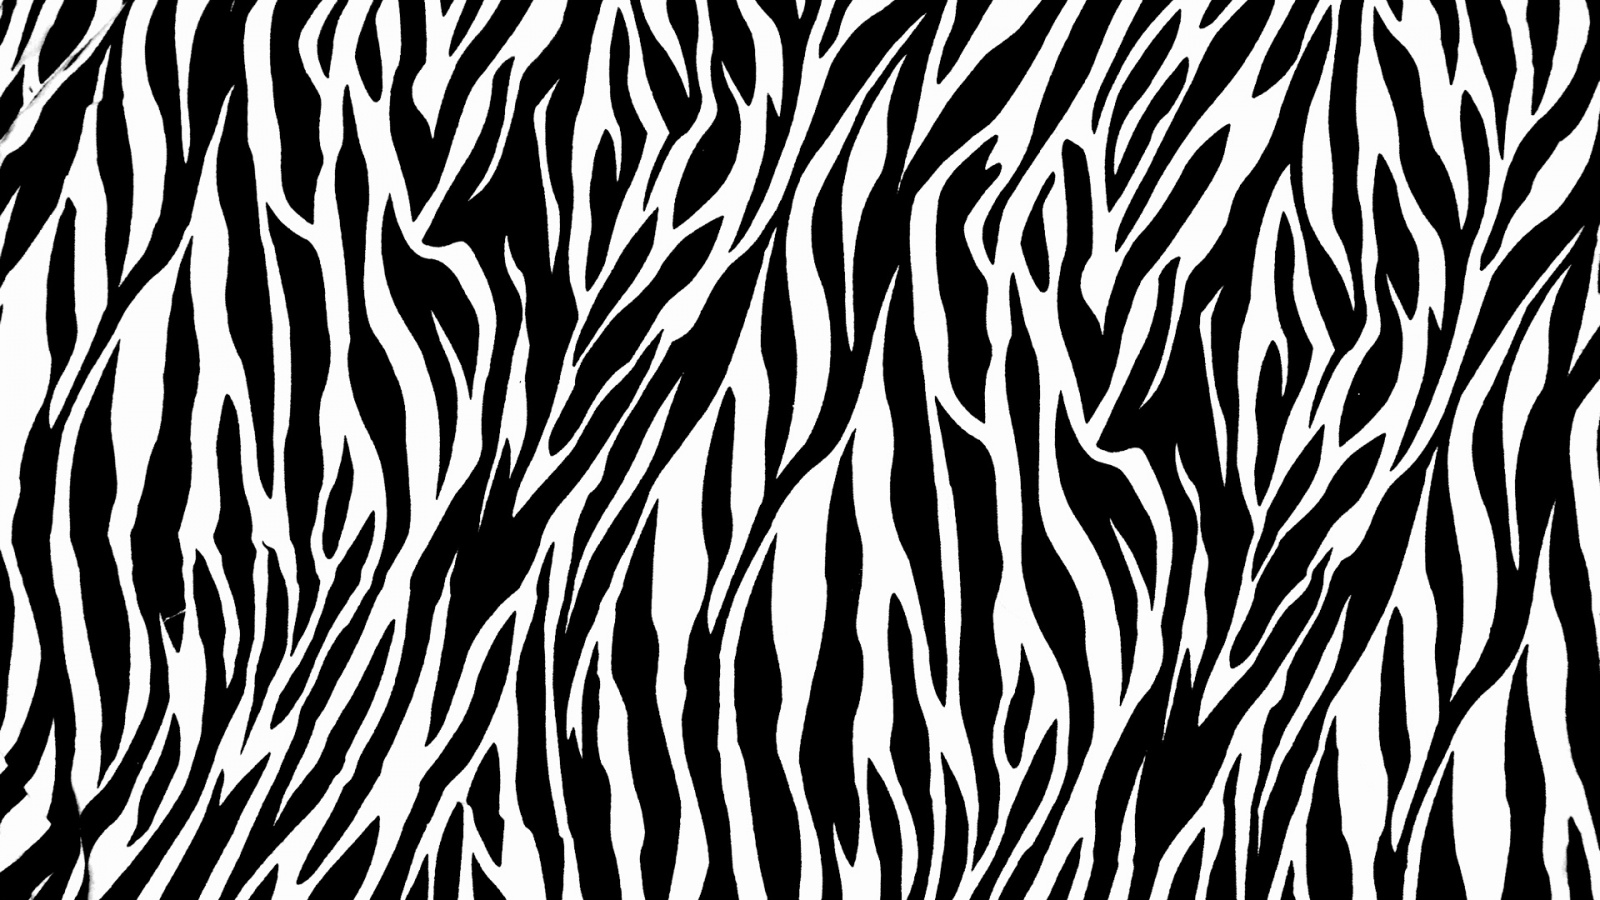 Zebra Print Background 18497 1240x800 px